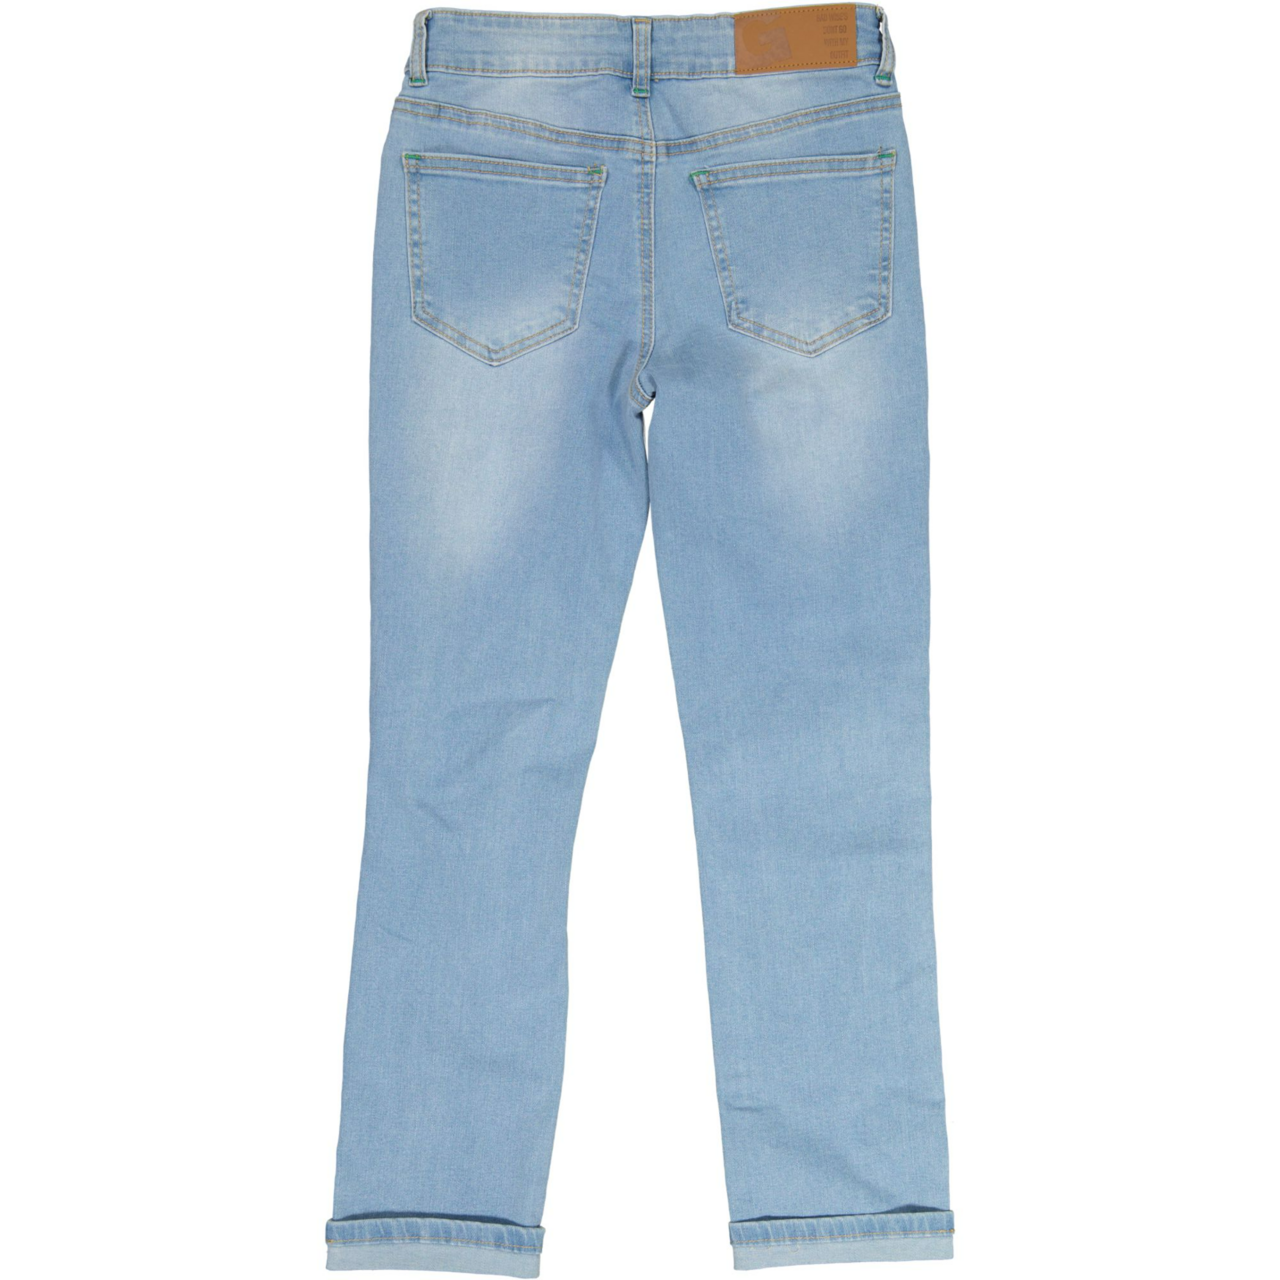 Unisex loose fit jeans Denim blue wash 122/128